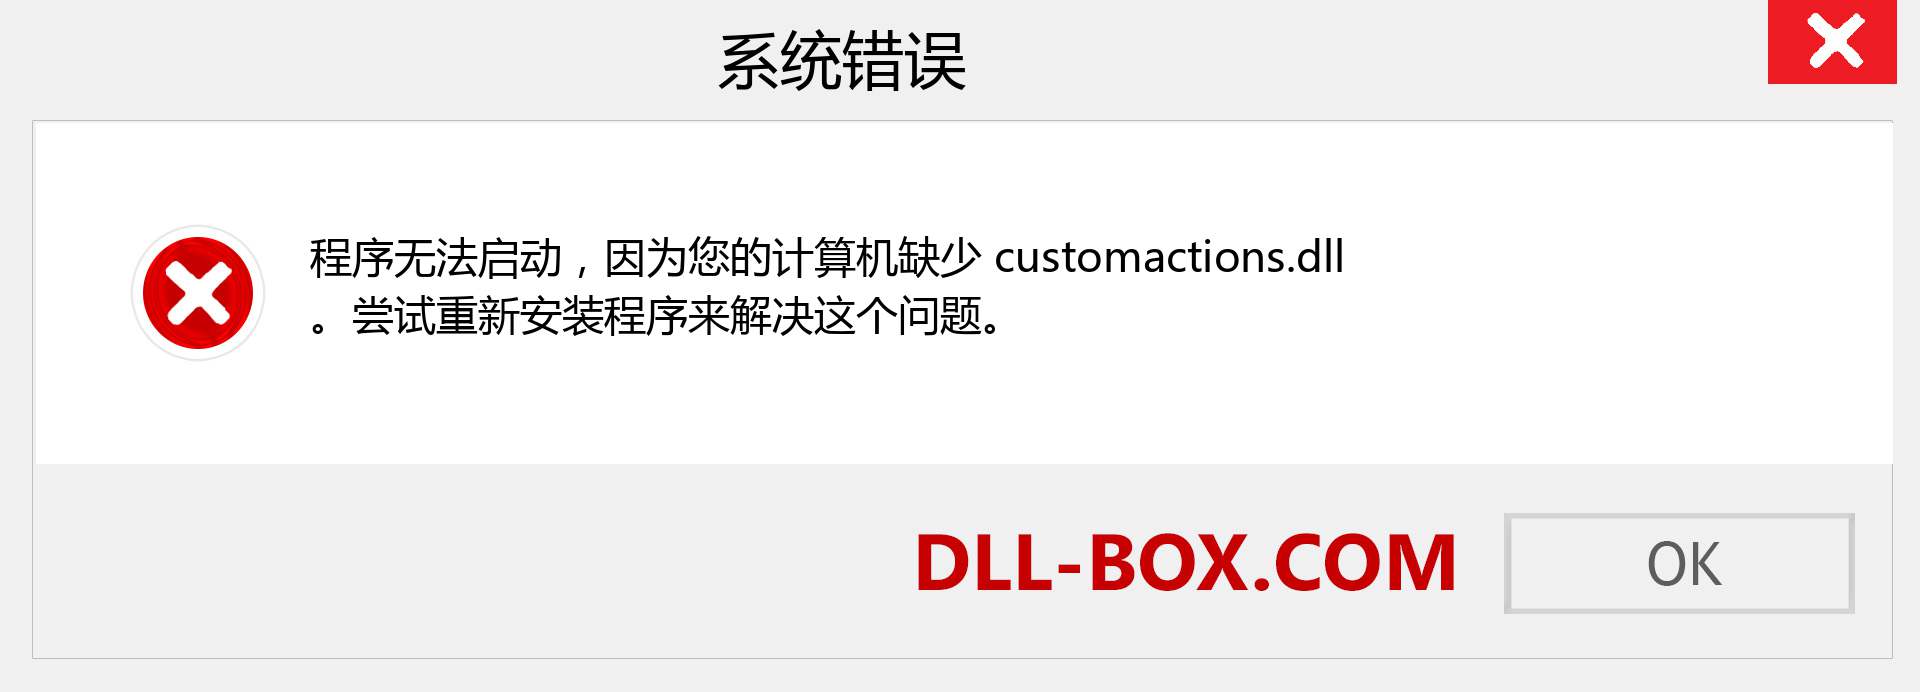 customactions.dll 文件丢失？。 适用于 Windows 7、8、10 的下载 - 修复 Windows、照片、图像上的 customactions dll 丢失错误